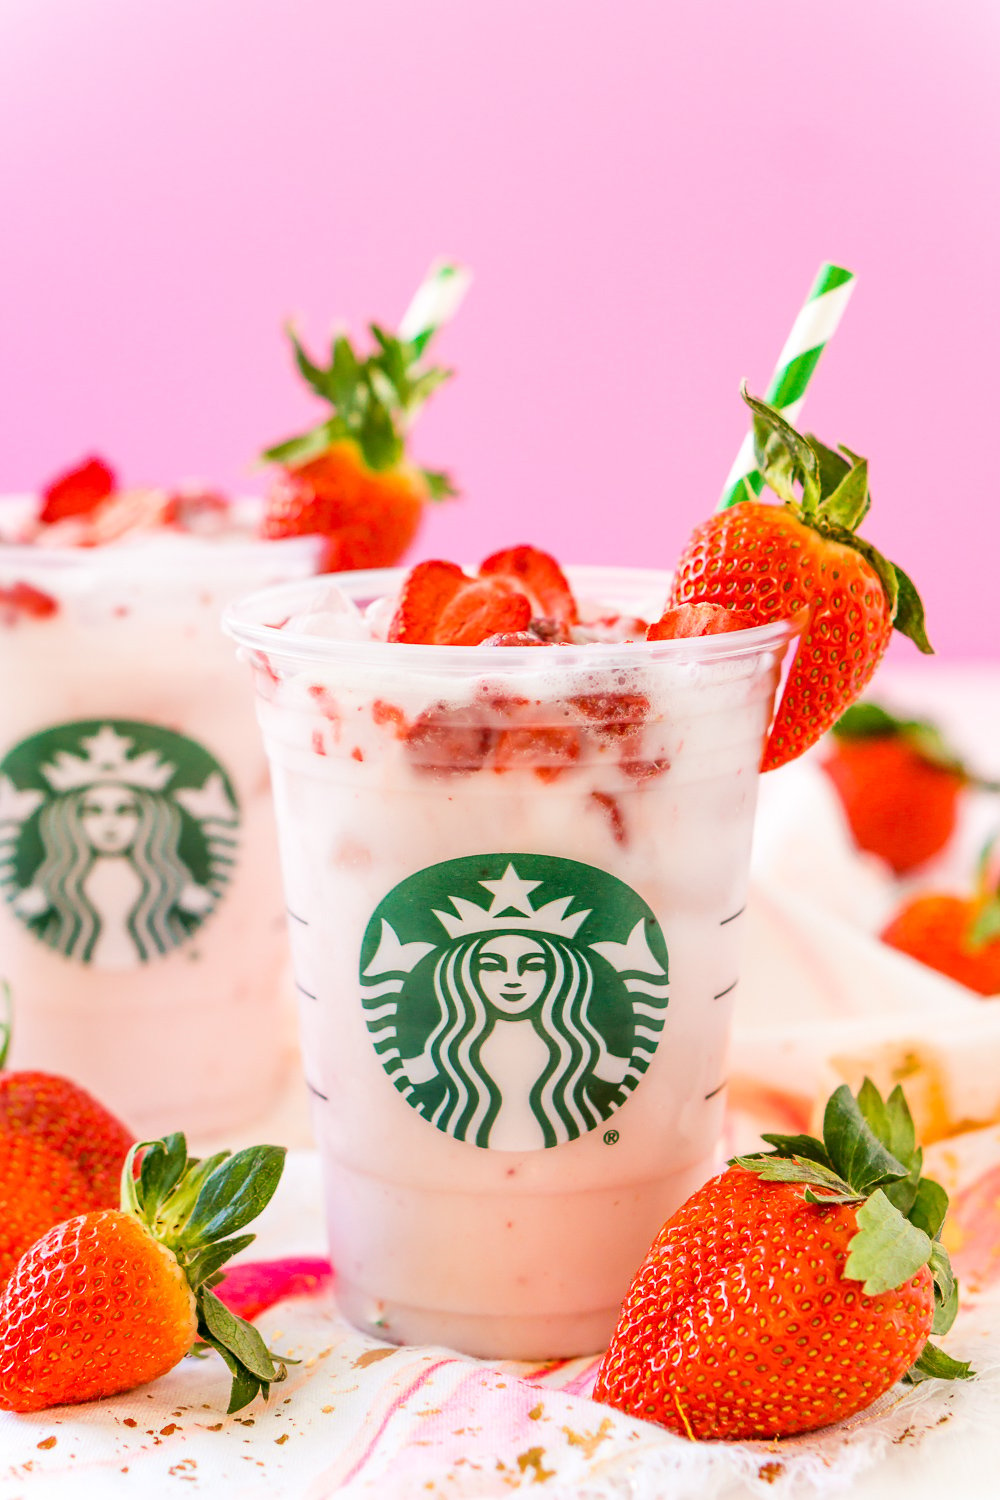 Copycat Starbucks Pink Drink im durchsichtigen Starbucks-Becher mit Erdbeeren und rosa Hintergrund.